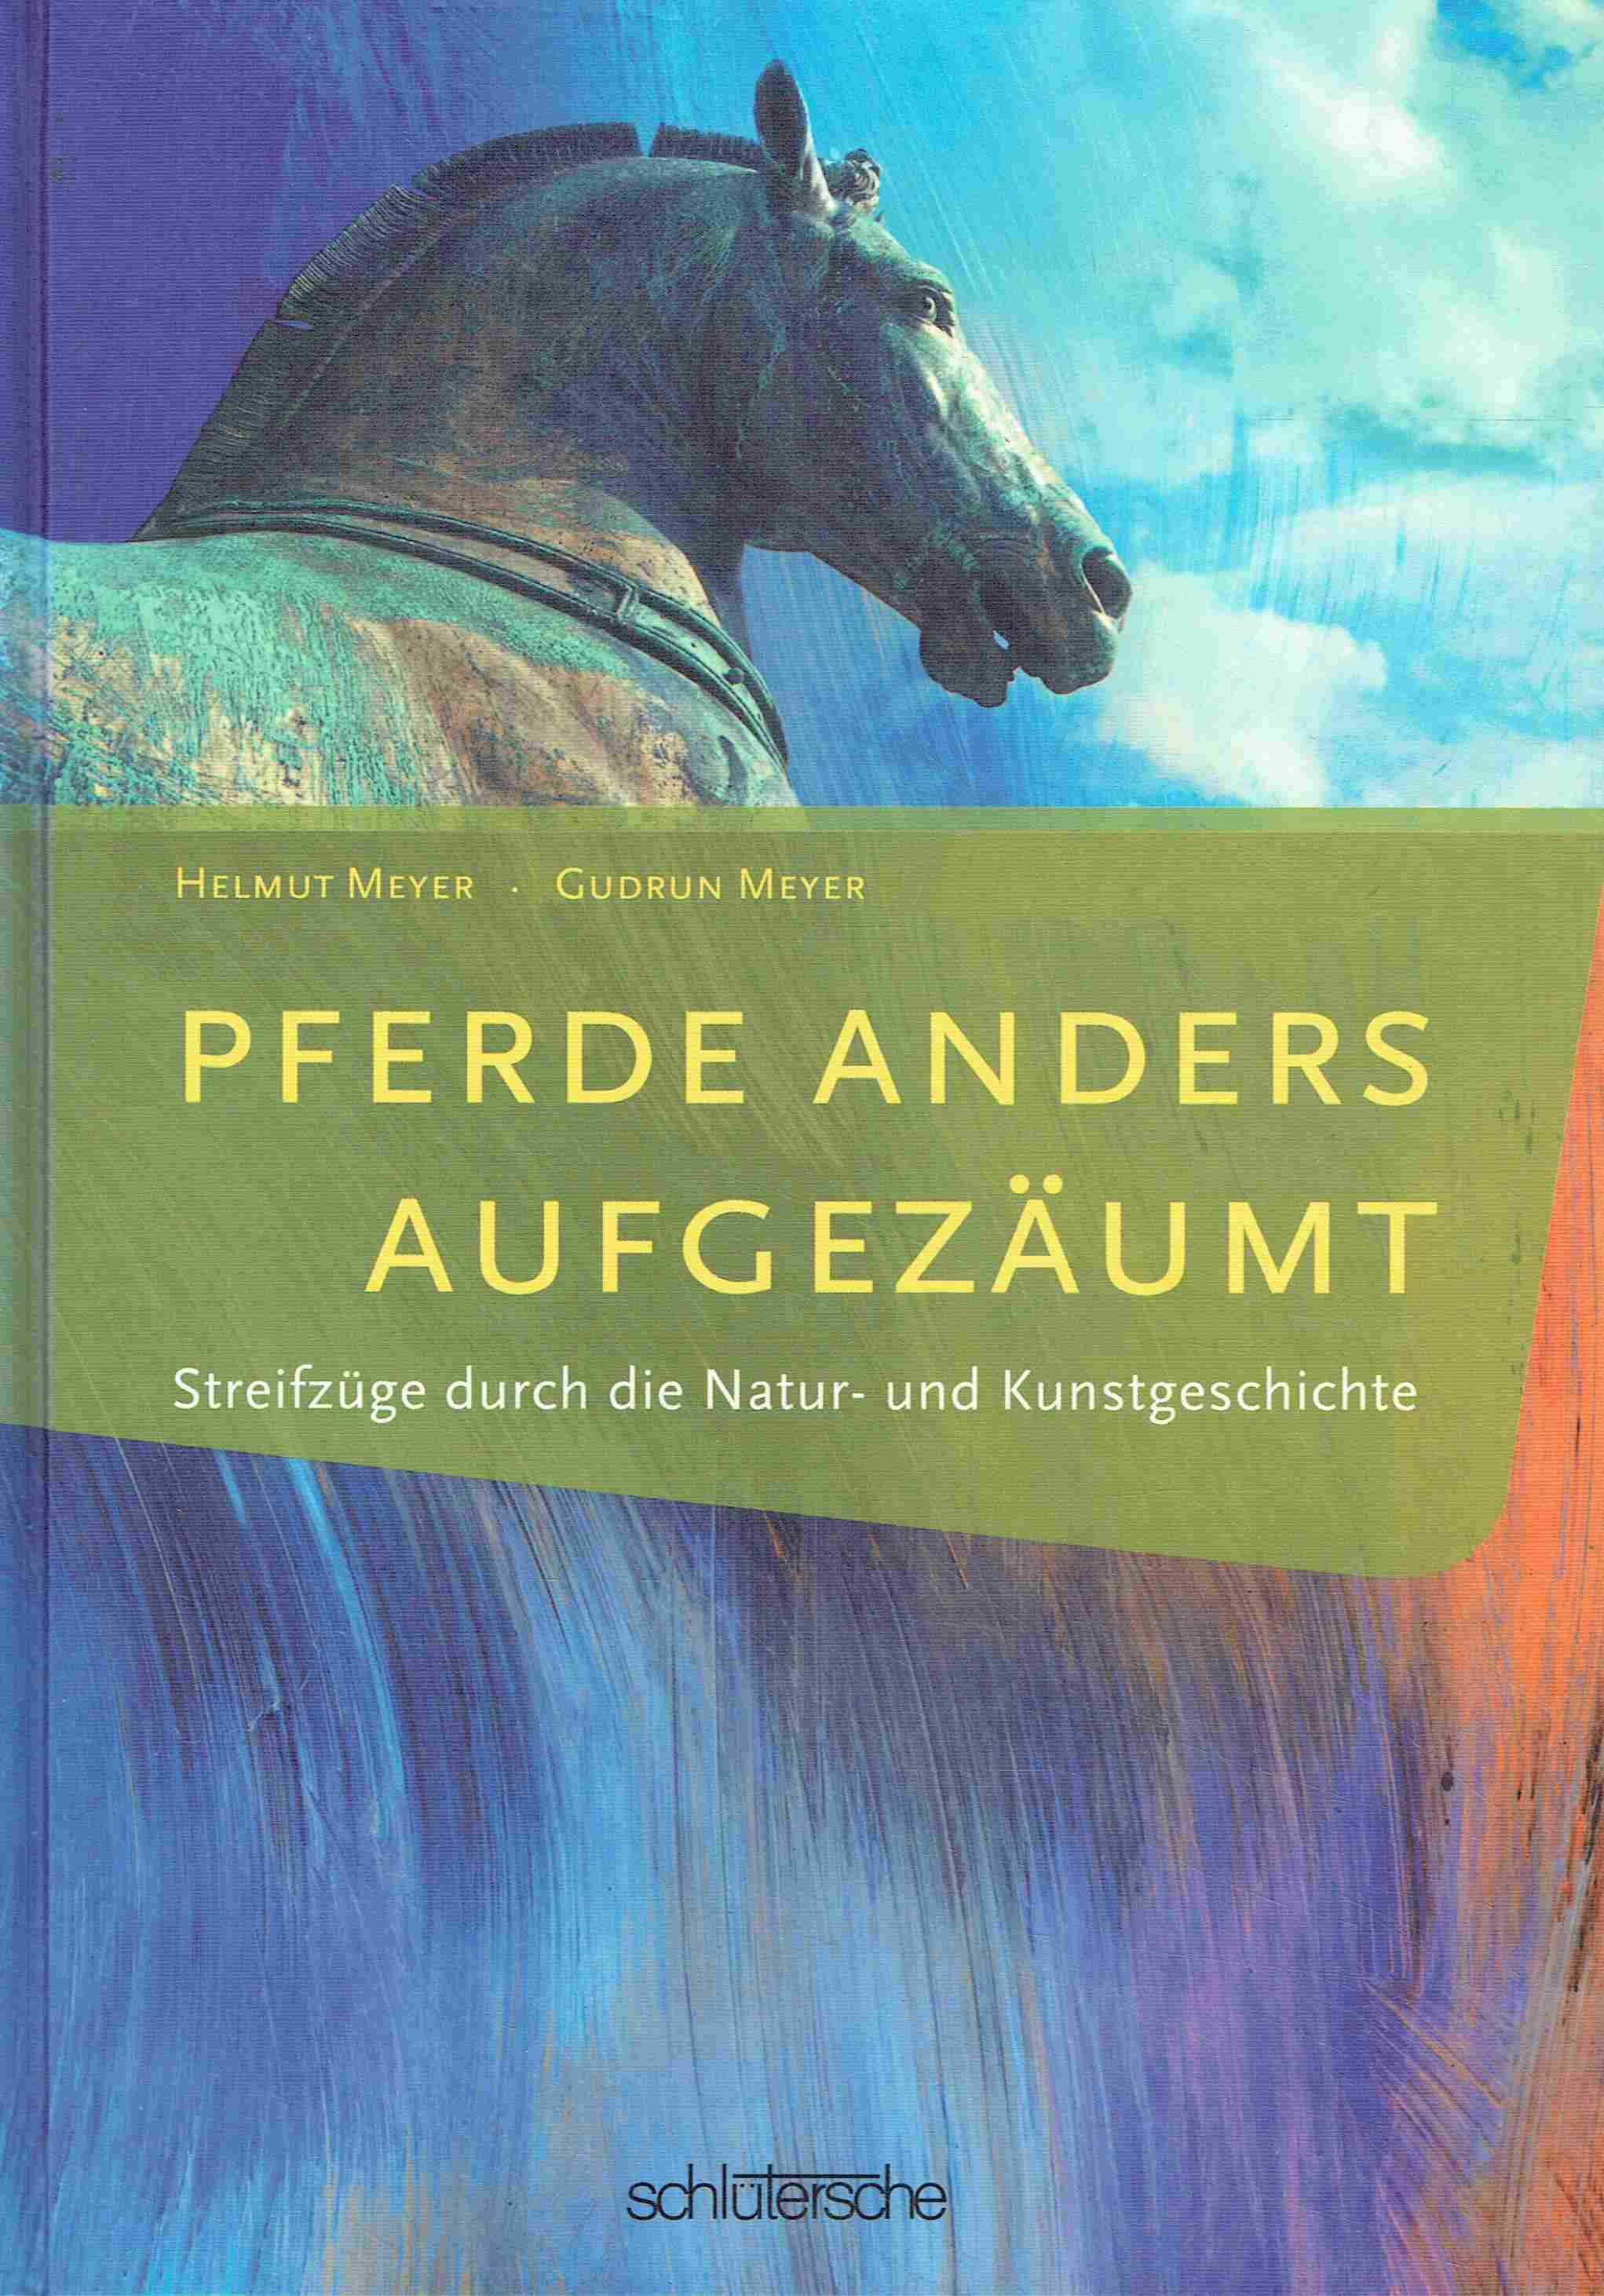 Pferde anders aufgezäumt: Streifzüge durch die Natur- und Kunstgeschichte. - Meyer, Helmut; Meyer, Gudrun